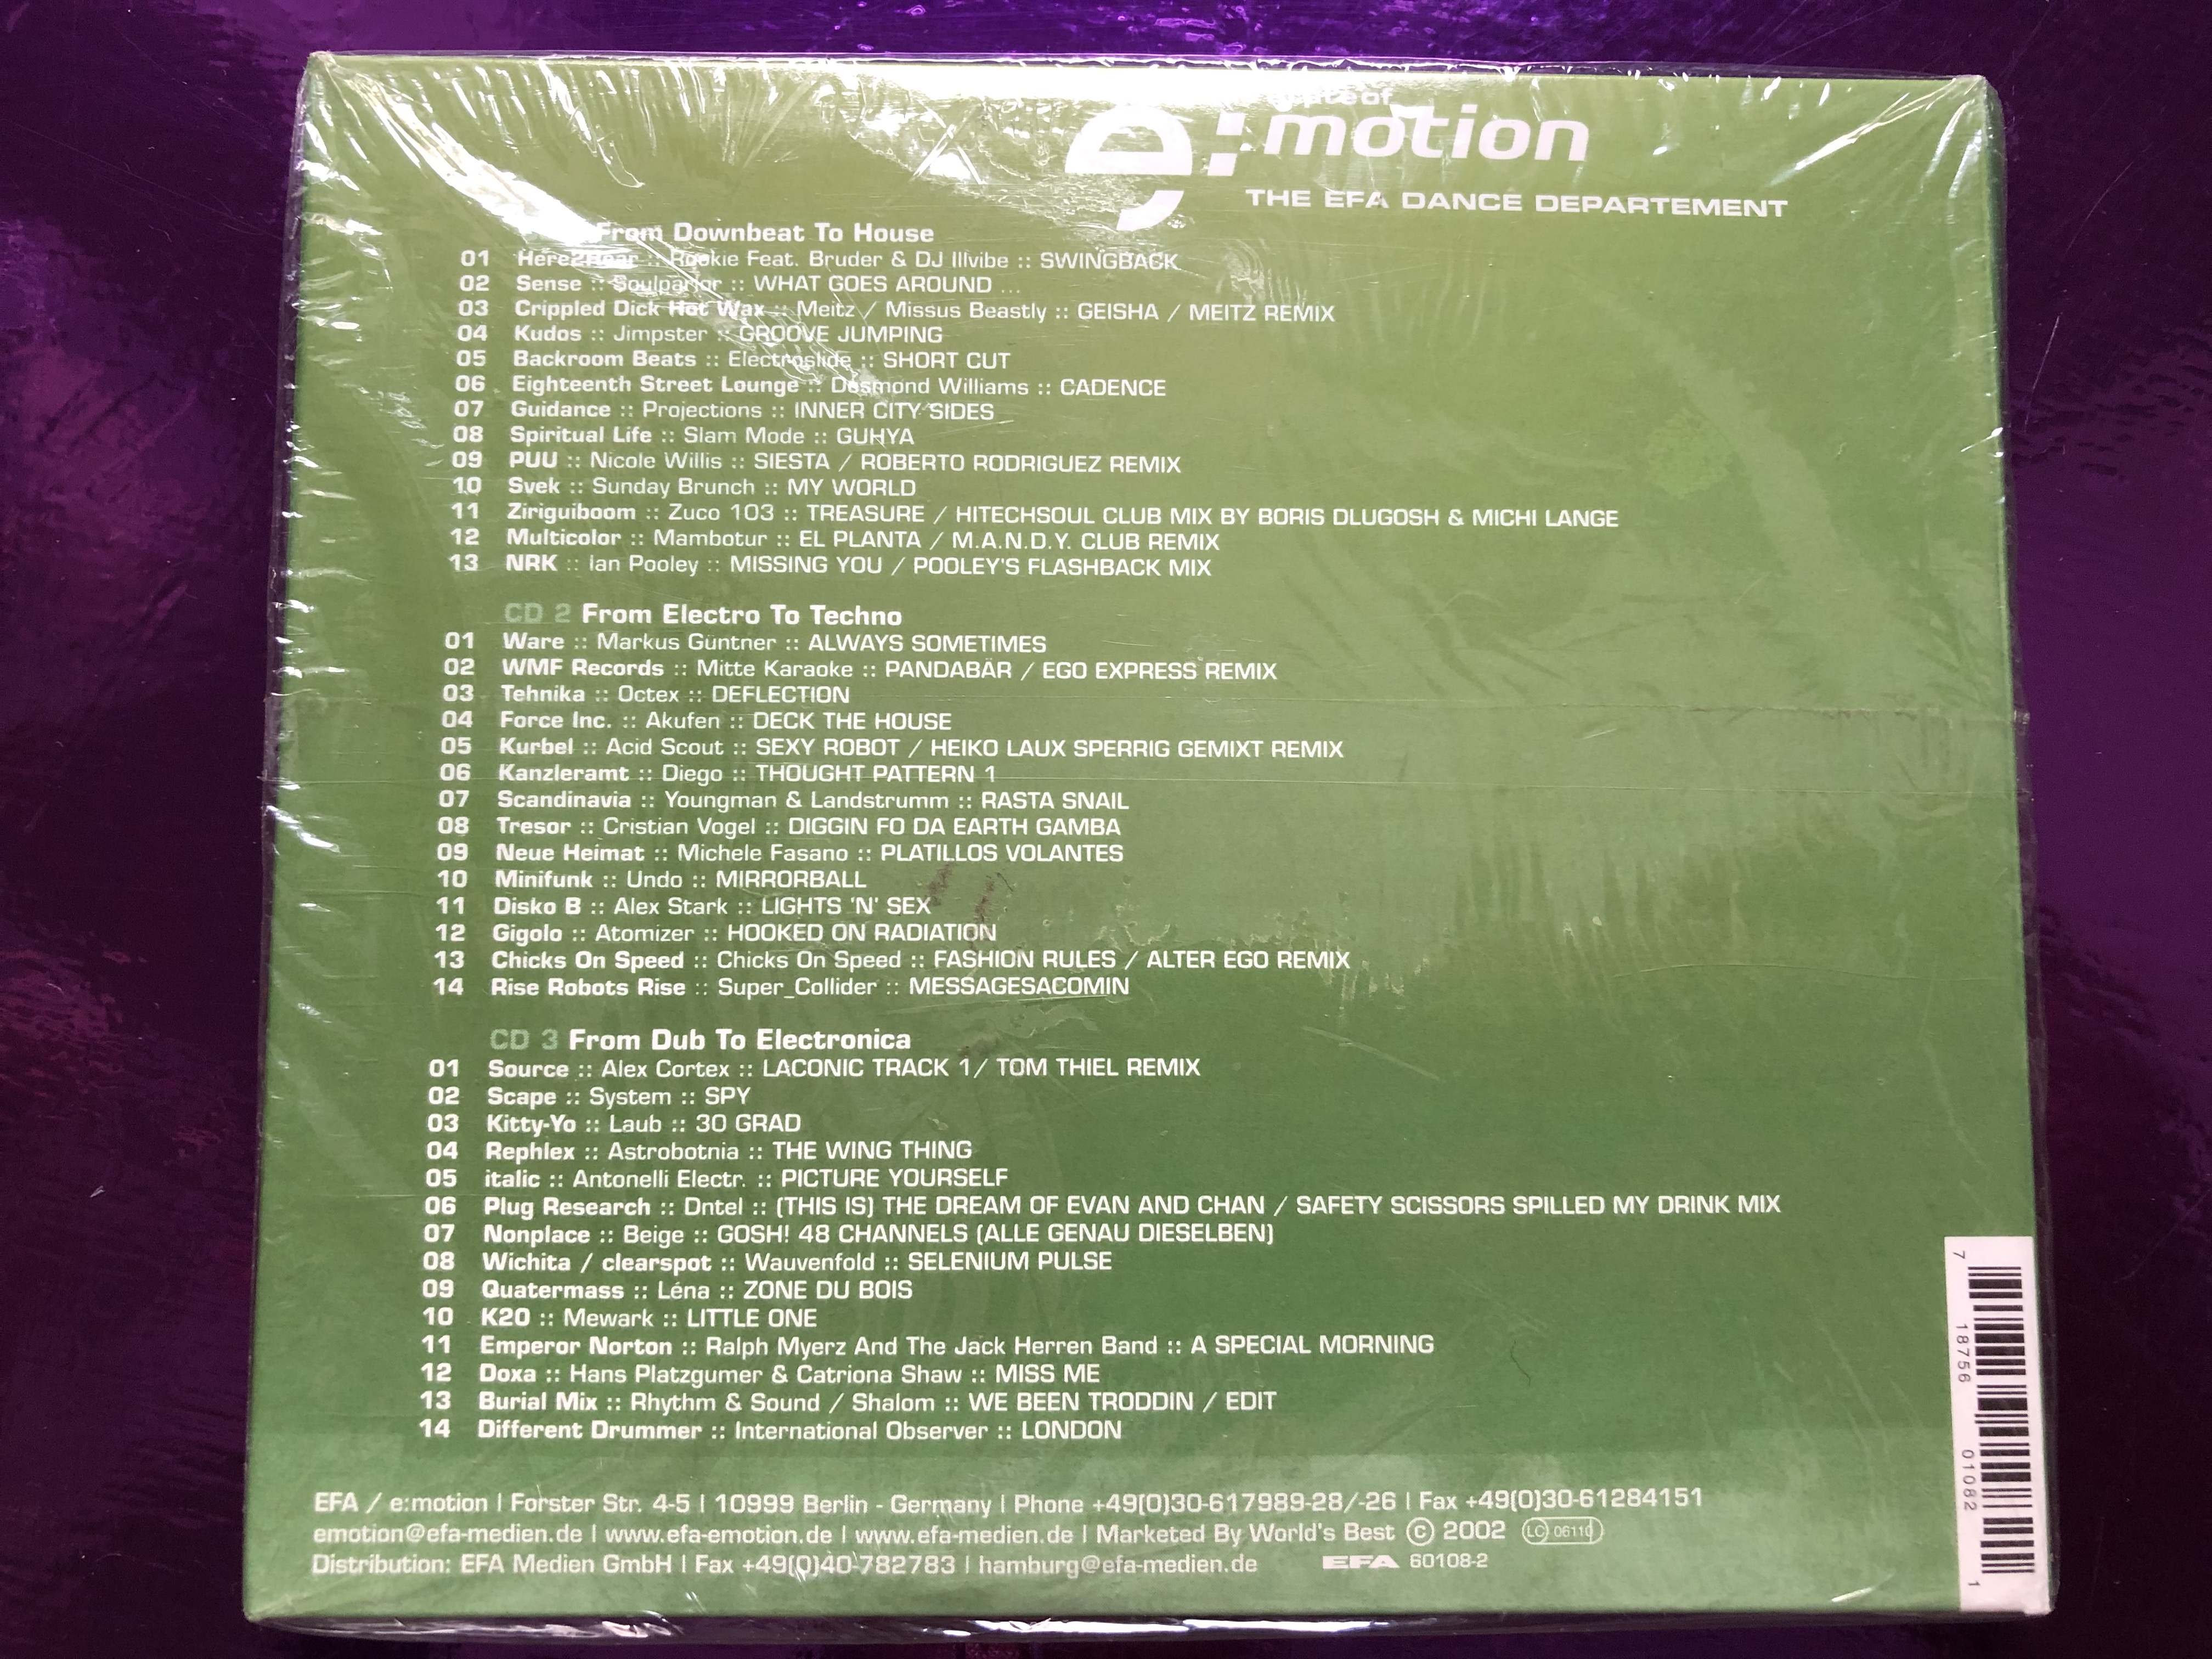 the-state-of-emotion-vol.10-the-efa-dance-departement-emotion-3x-audio-cd-2002-efa-60108-2-2-.jpg